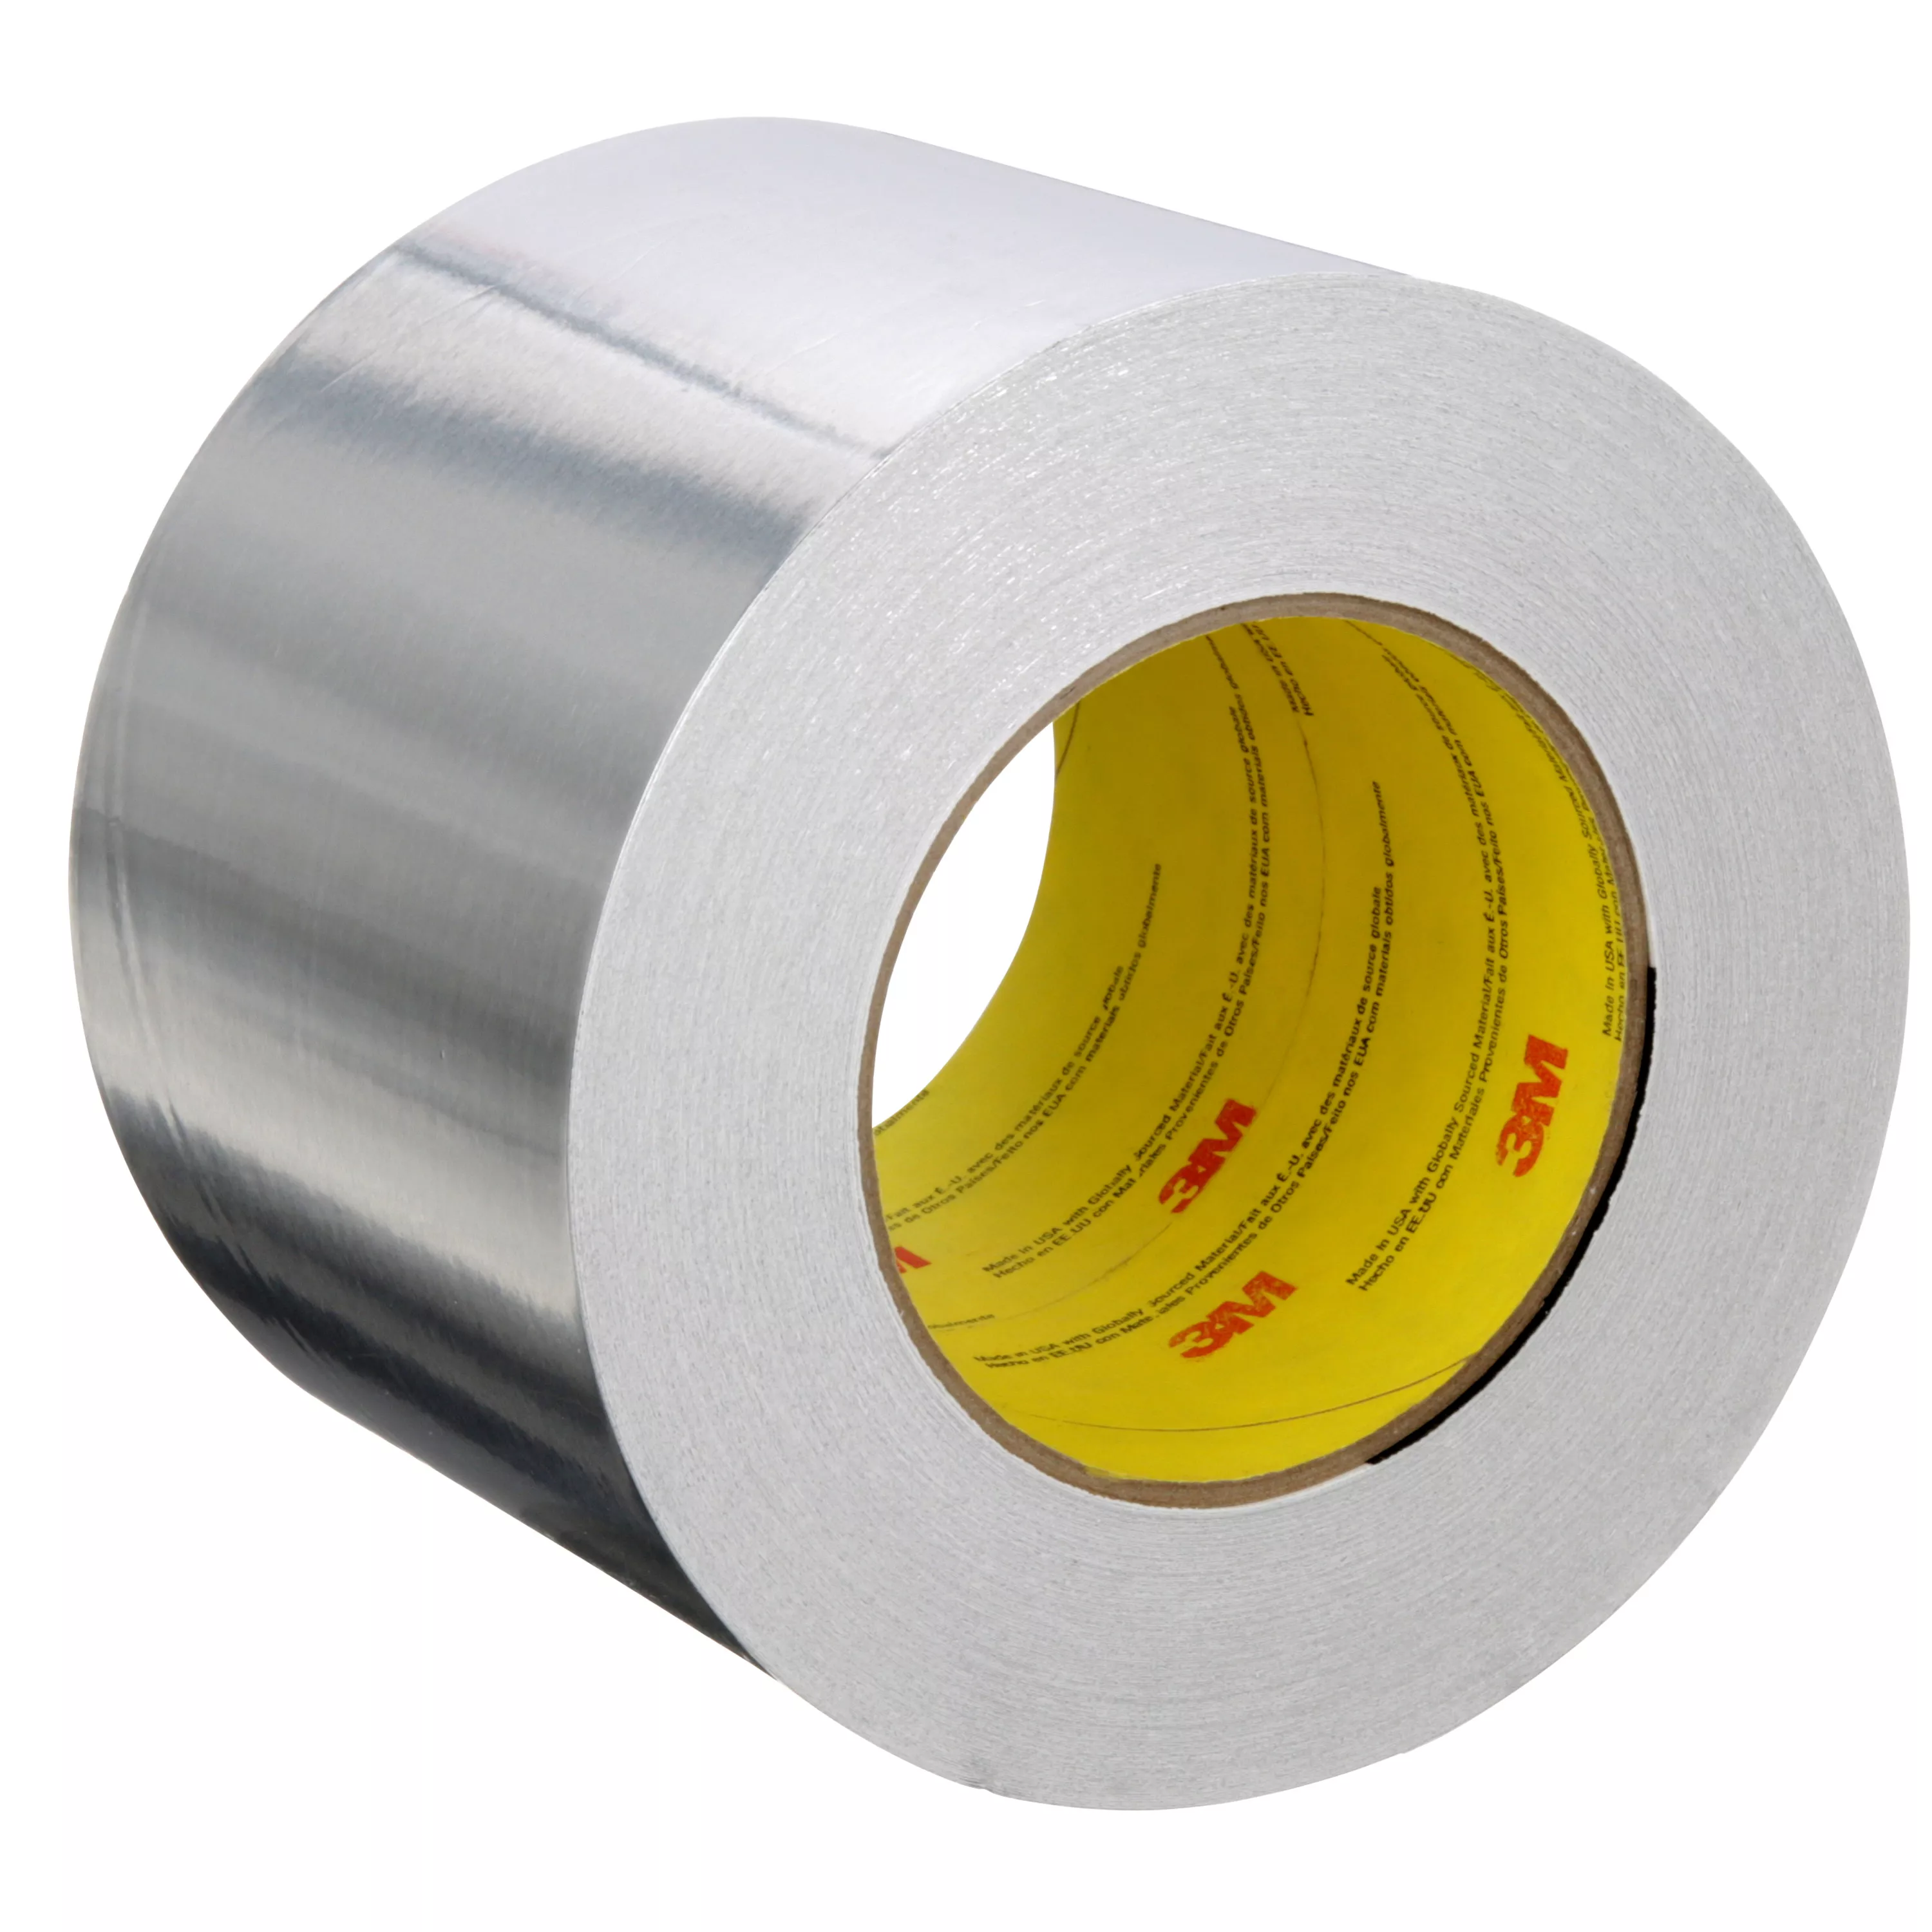 3M™ Aluminum Foil Tape 2C120, Silver, 99 mm x 45.7 m, 1.8 mil, 12
Rolls/Case